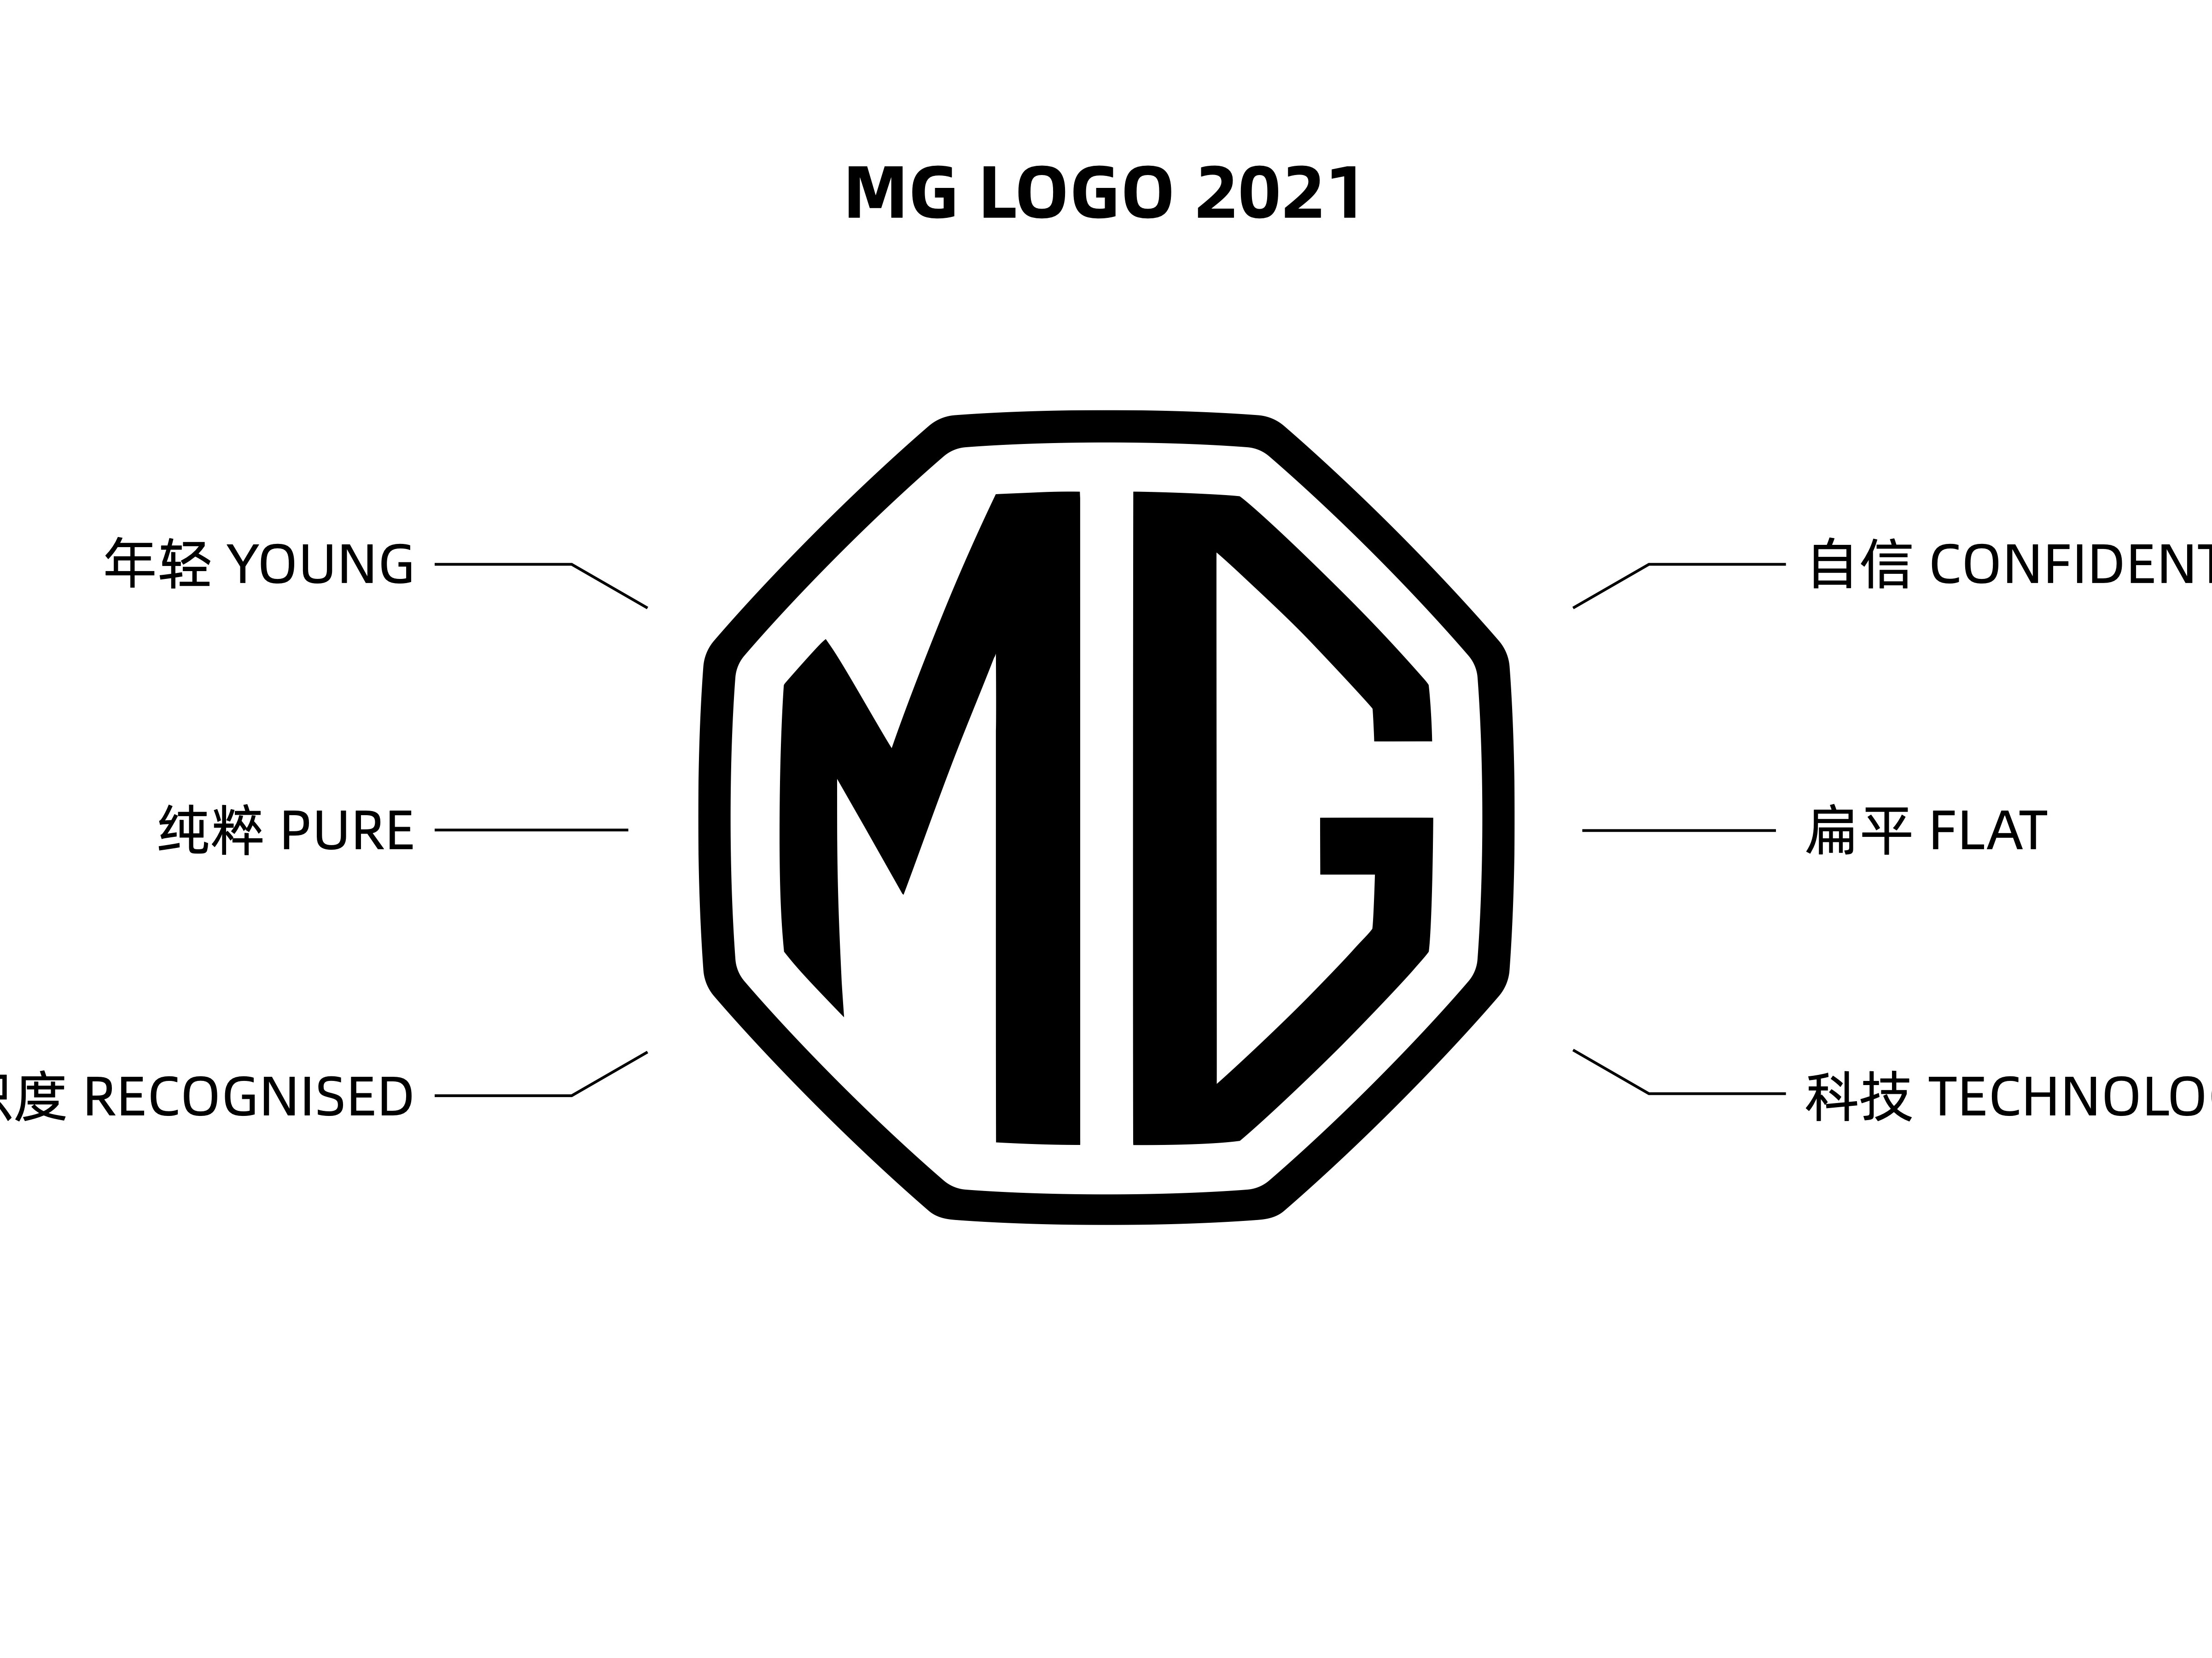 MG新标识解读 | 更扁平、更醒目、更多元